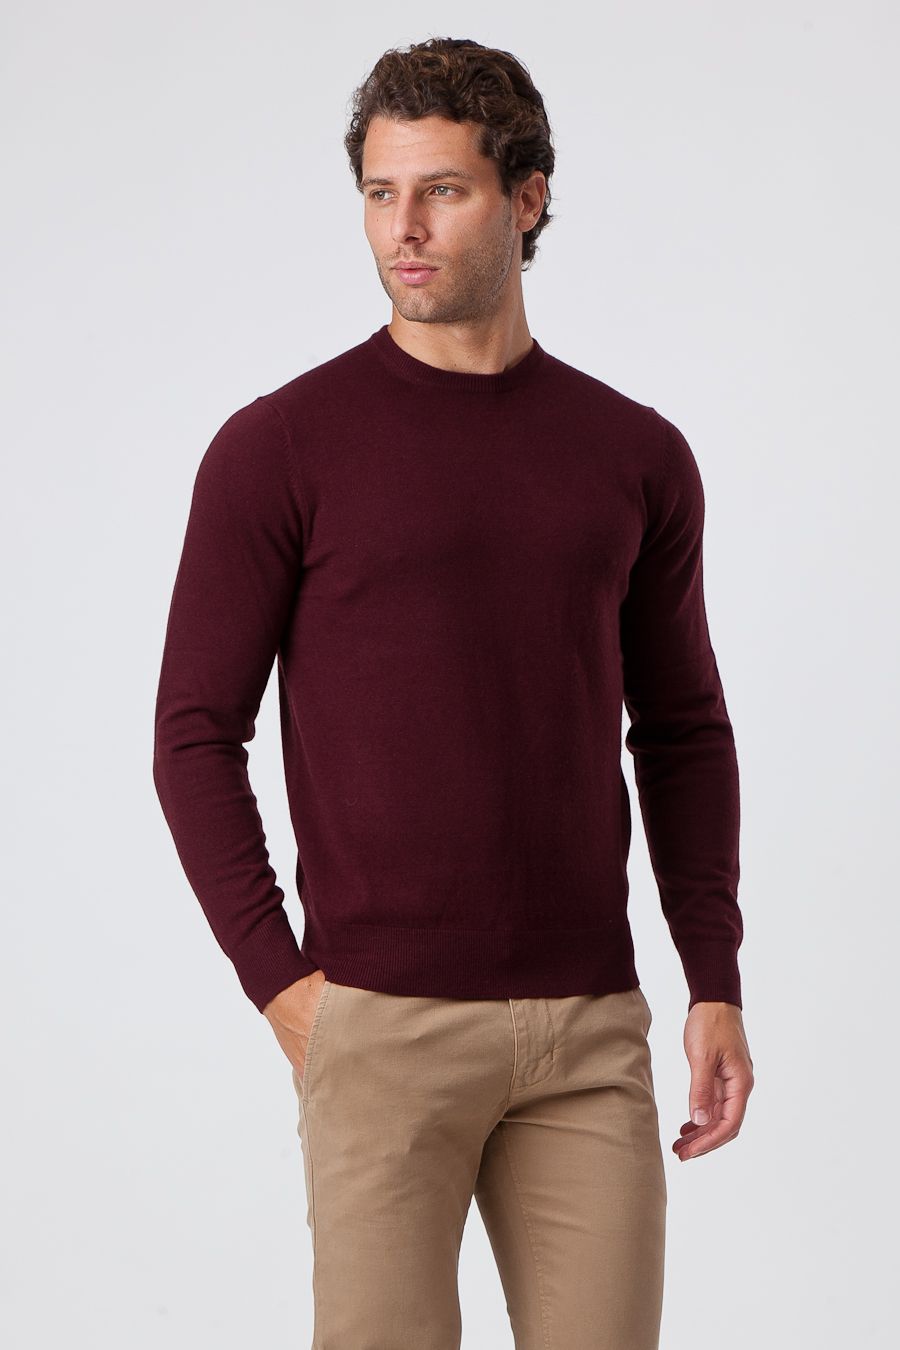 Sweater Bordeaux